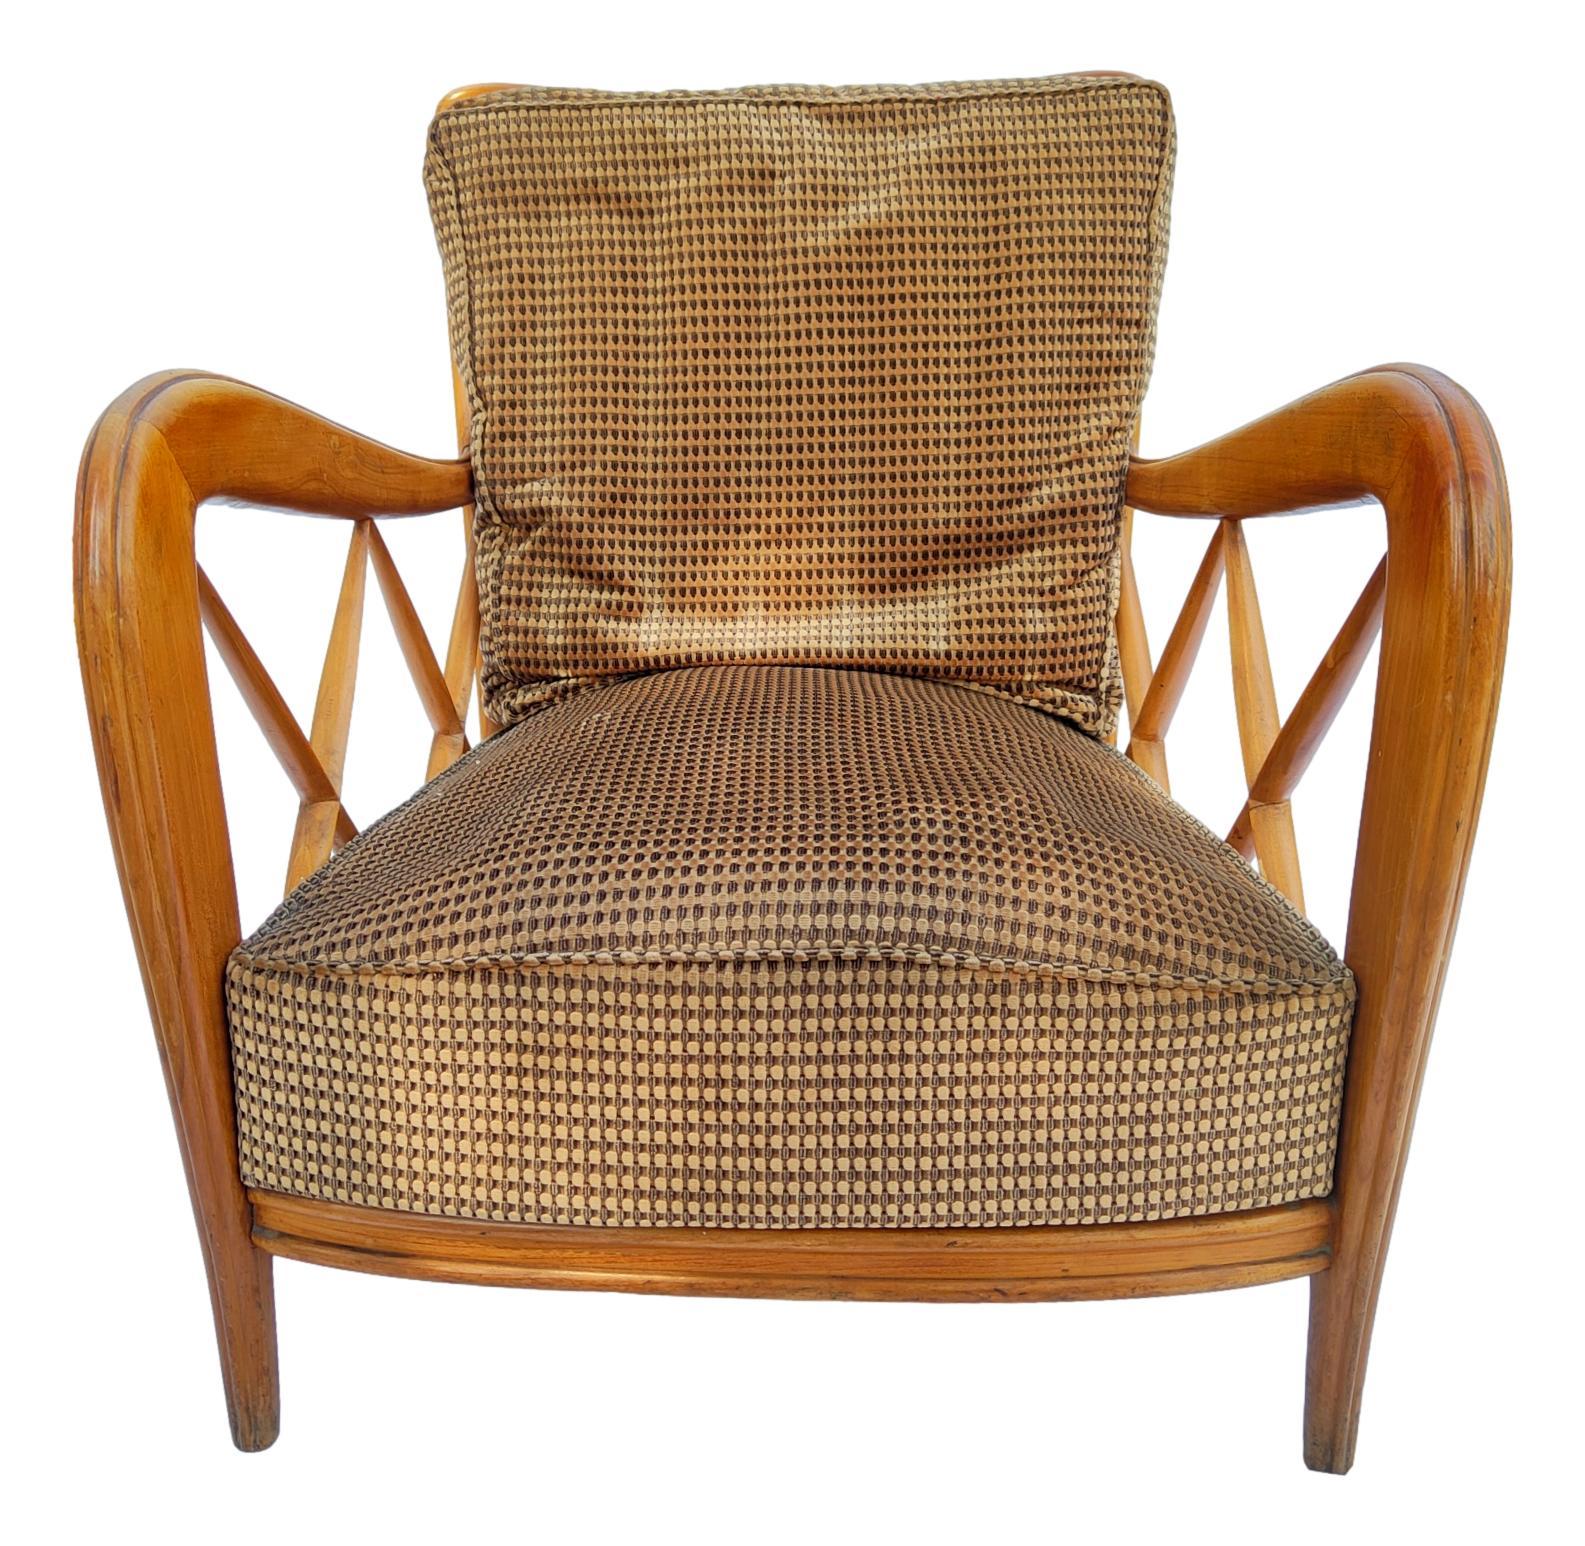 Wunderschönes Paar original italienischer Sessel aus den 1950er Jahren, entworfen von Paolo Buffa, aus Holz mit beige und braun gemustertem Samtbezug.

Sie messen 73 cm in der Höhe, 62 cm in der Breite und 70 cm in der Tiefe, in sehr gutem Zustand,